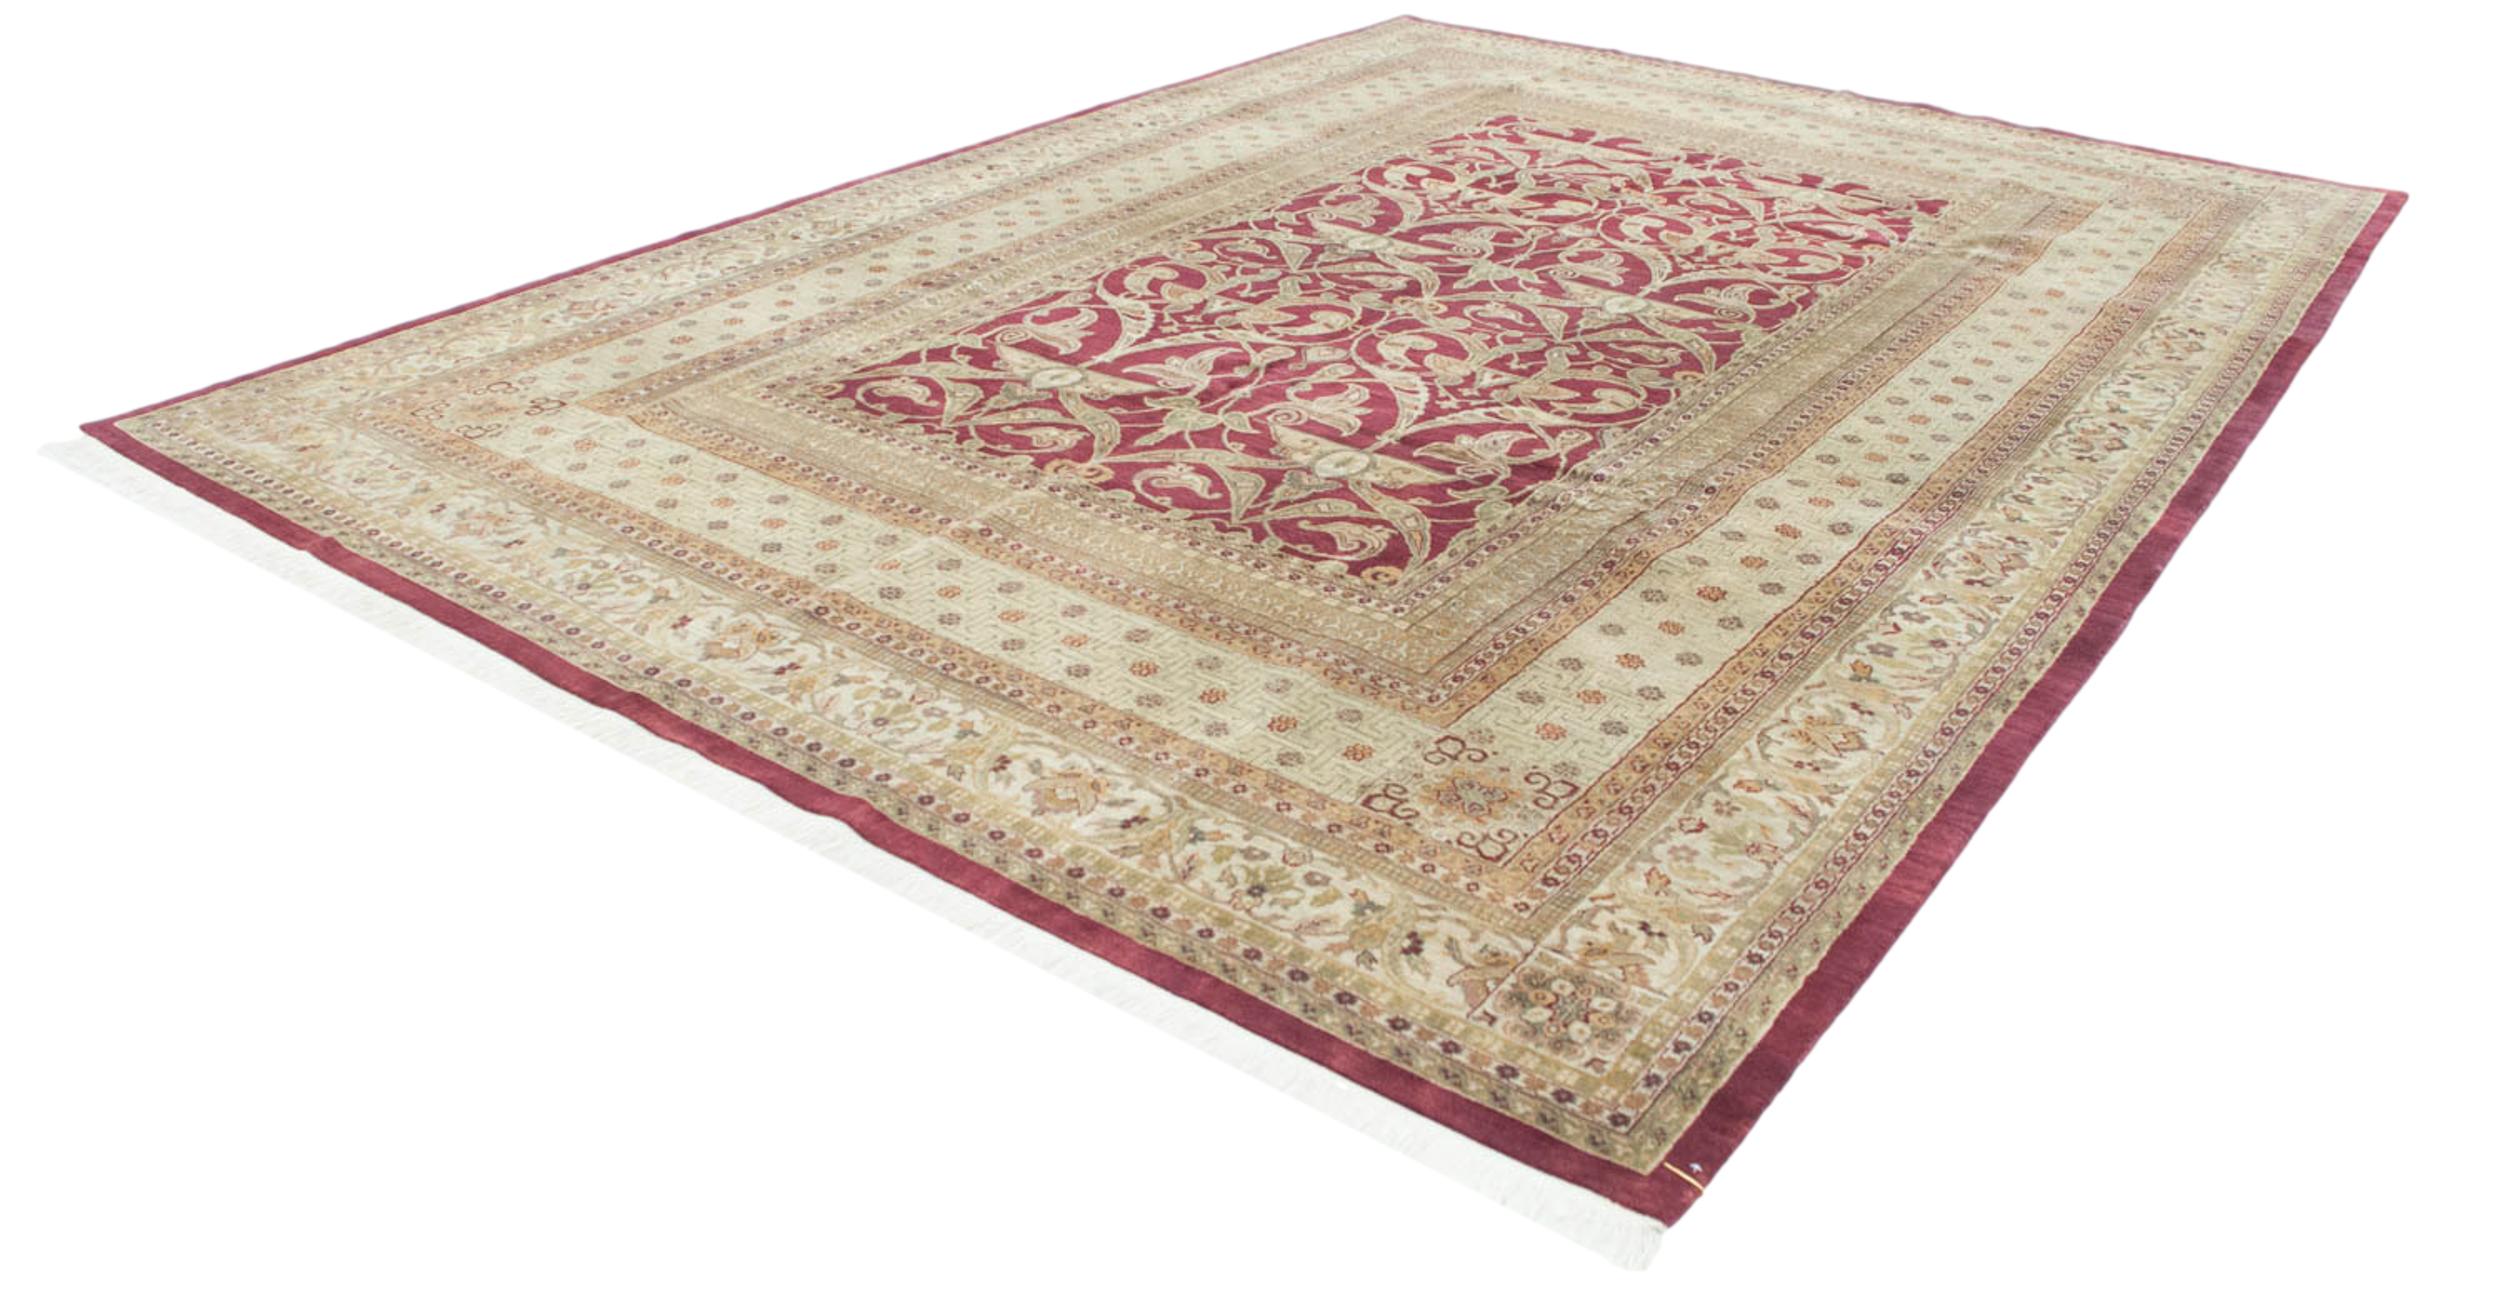 Contemporary Fine Indian Art Nouveau Design Carpet For Sale